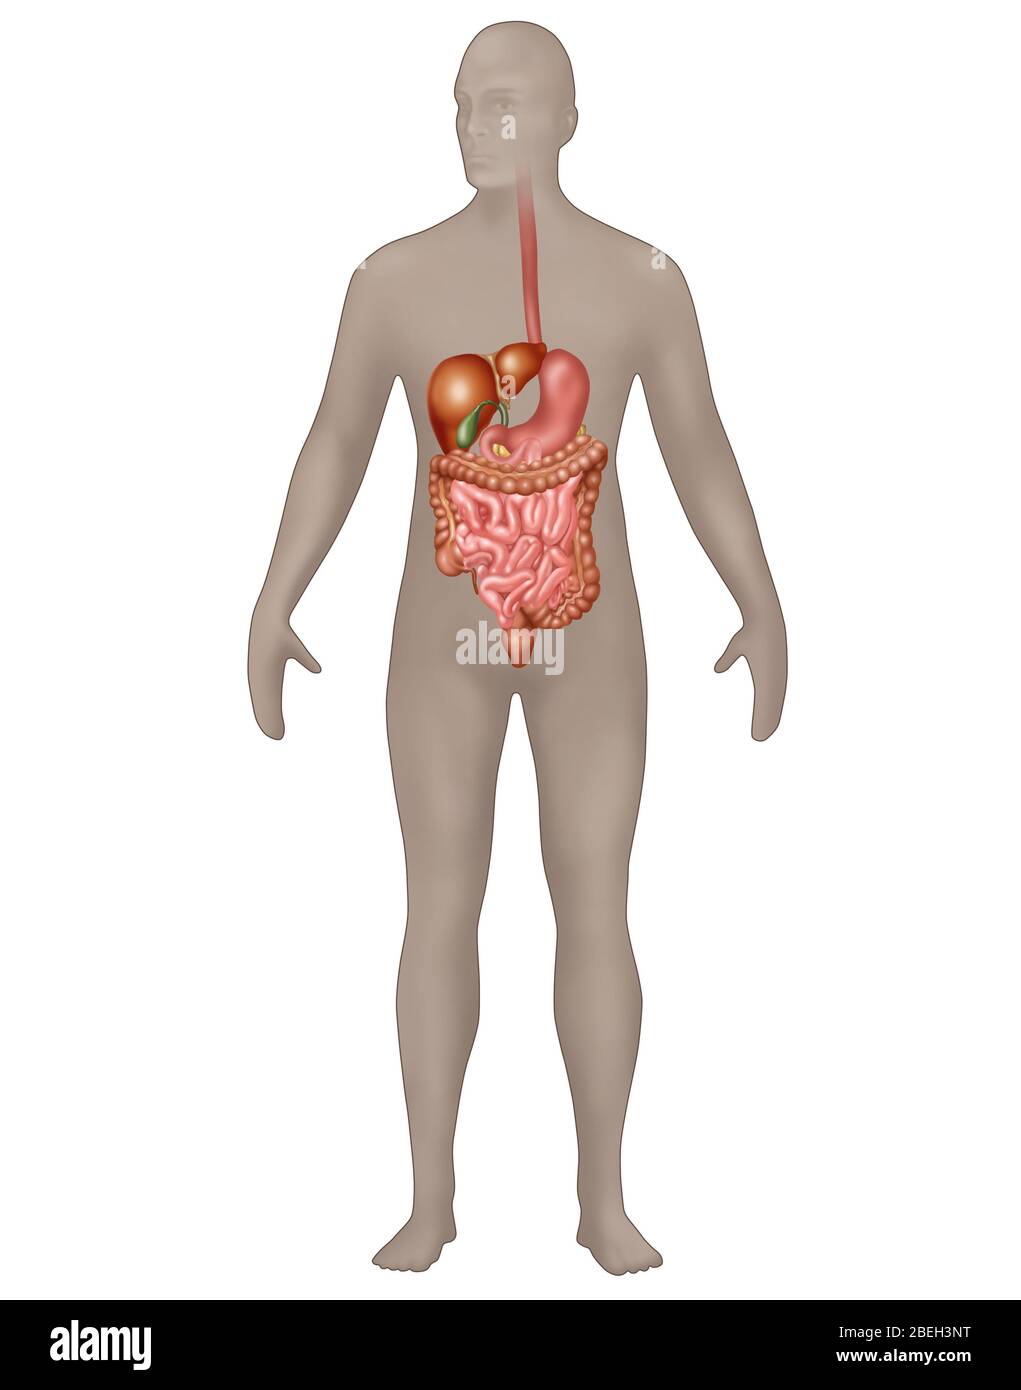 Sistema digestivo en Anatomía masculina Foto de stock